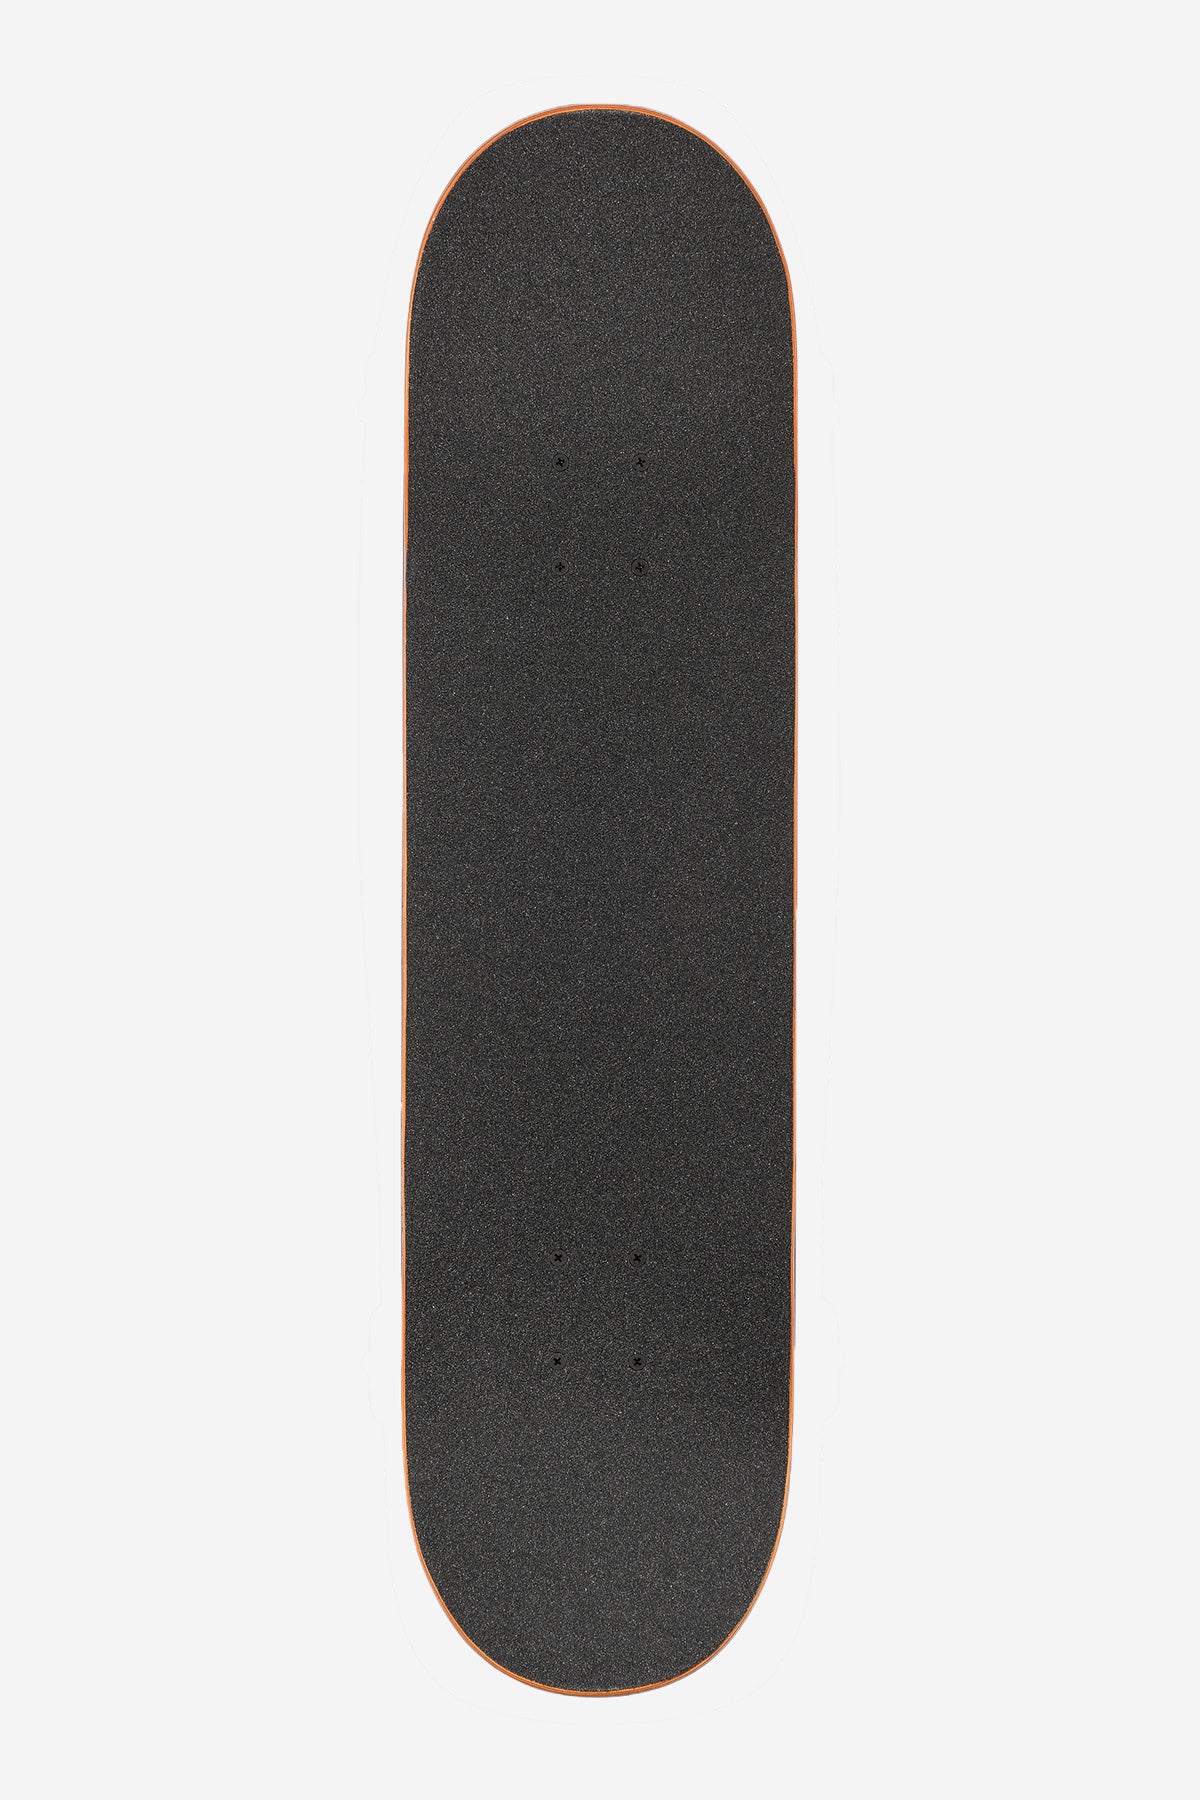 G1 Hard Luck - White/Schwarz - 8.0" Komplett Skateboard